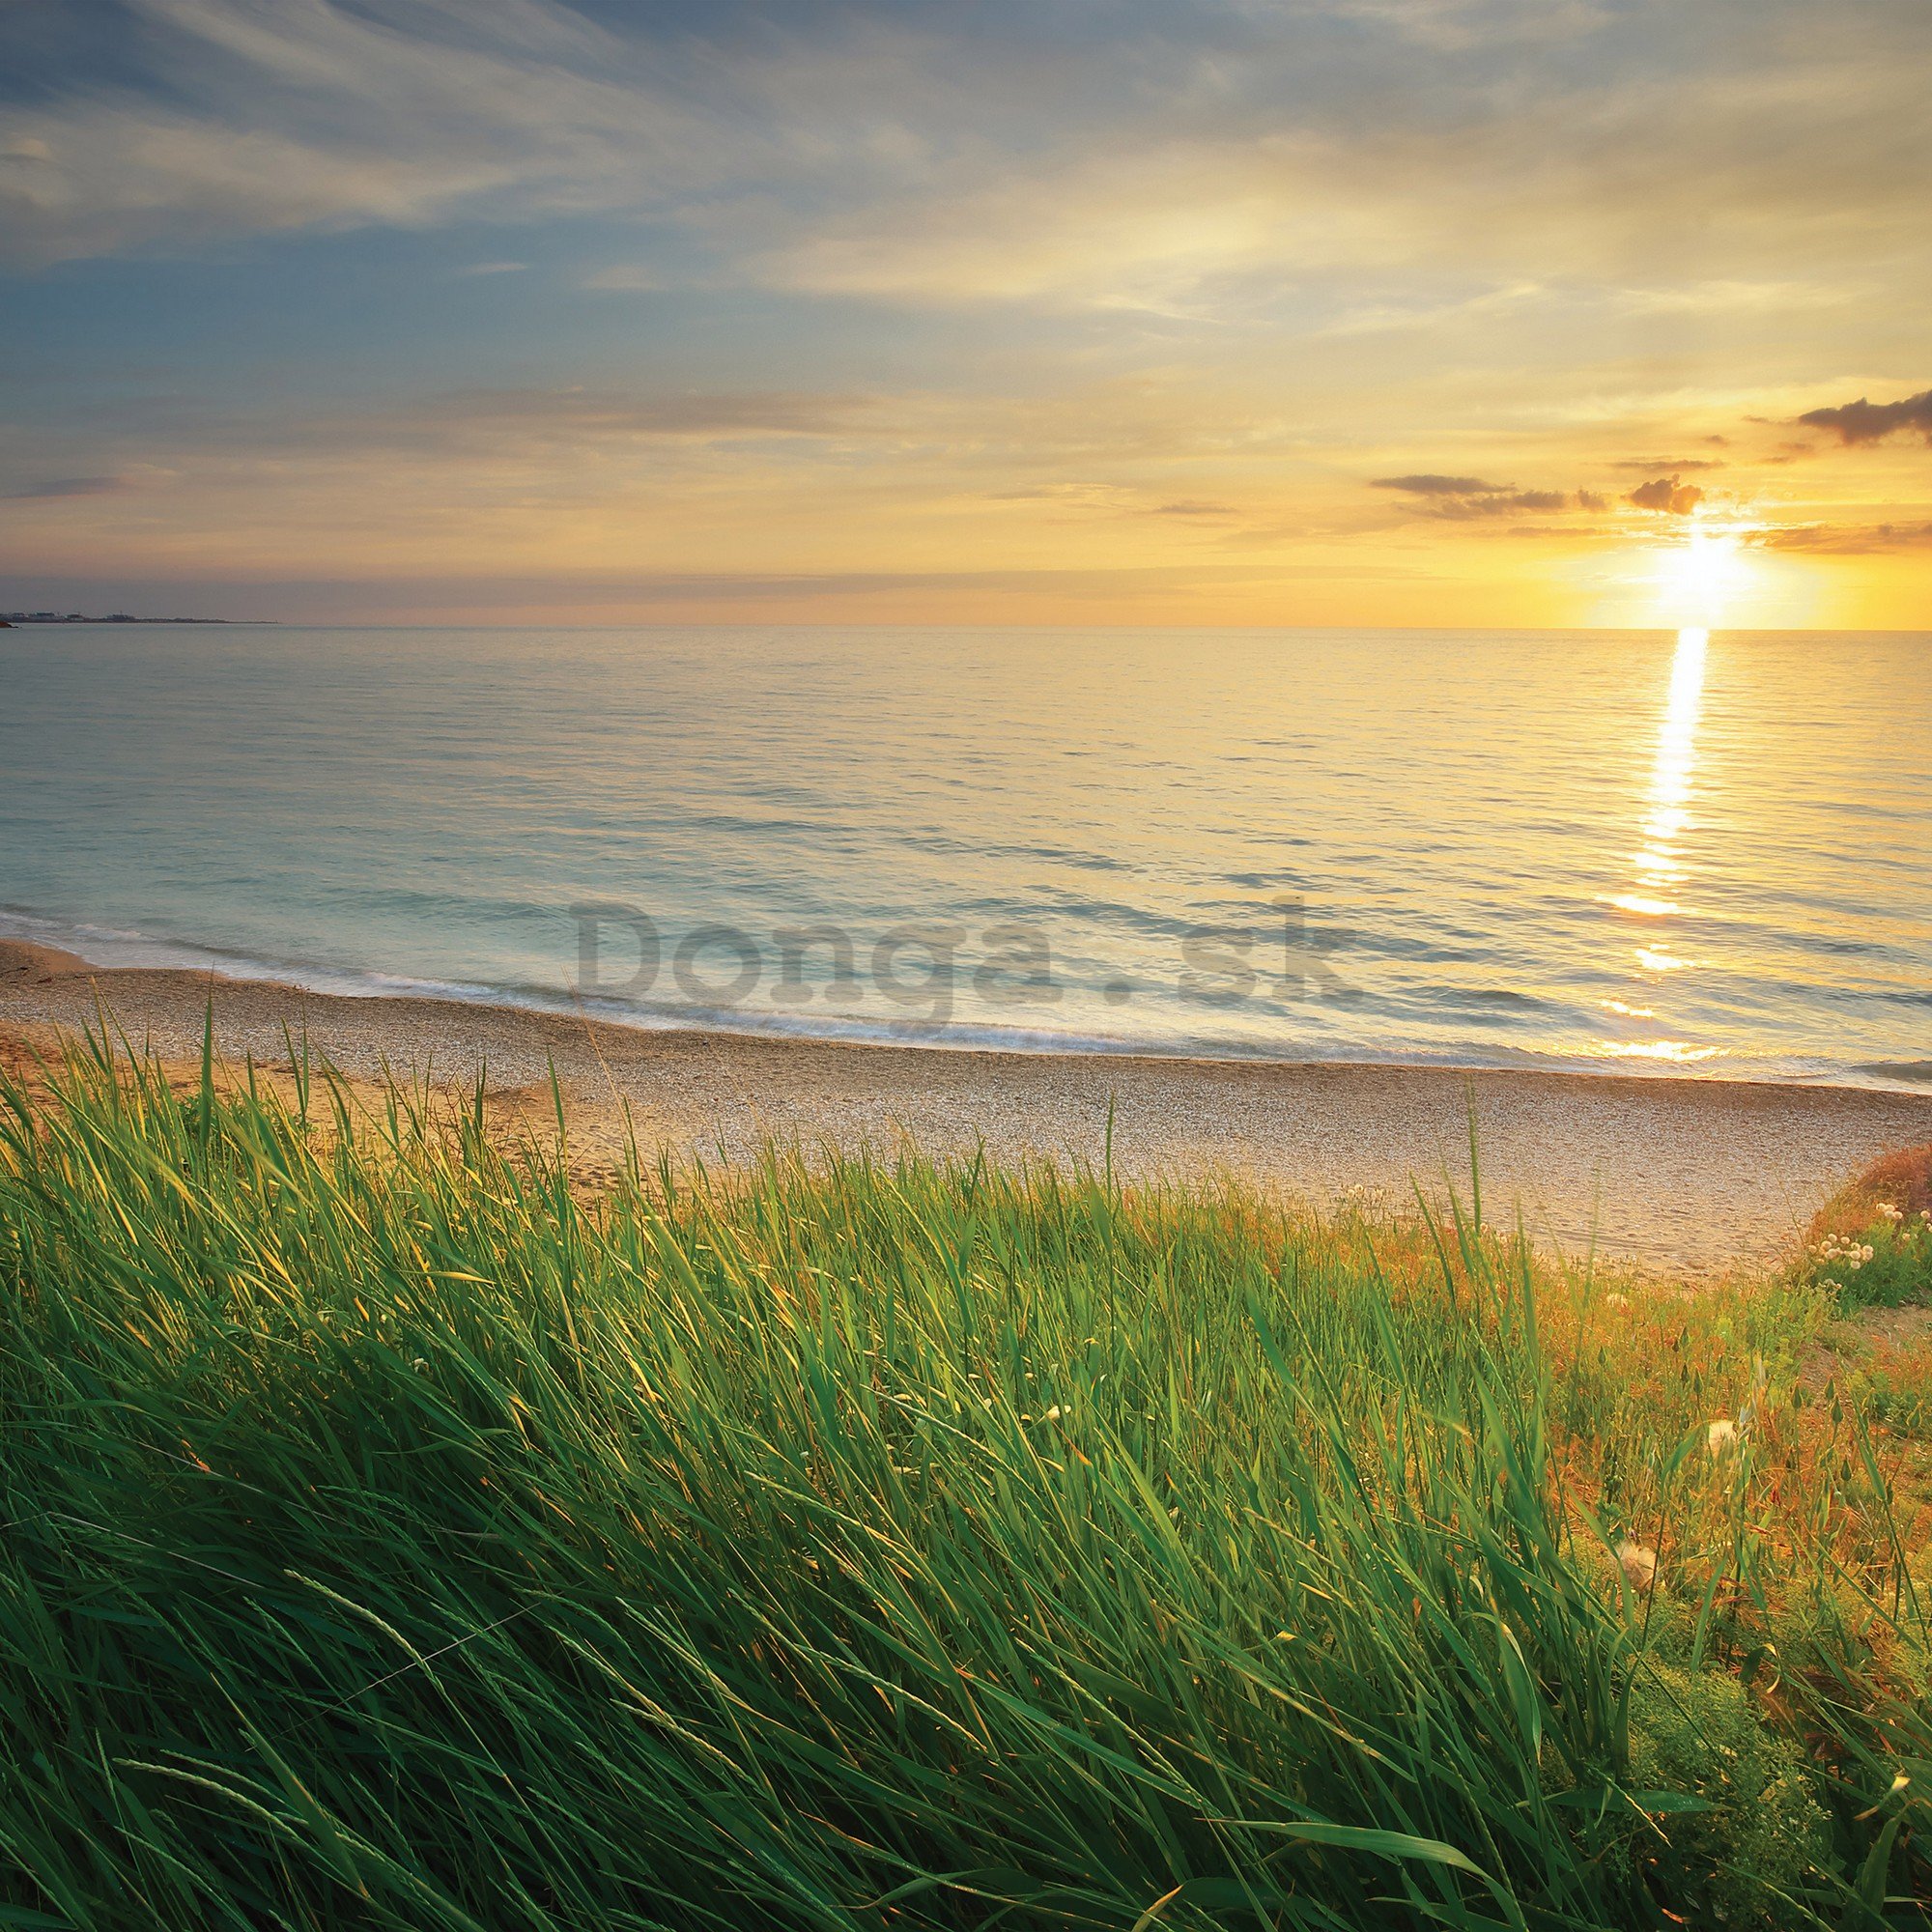 Fototapeta vliesová: Pláž pri západe slnka - 416x254 cm